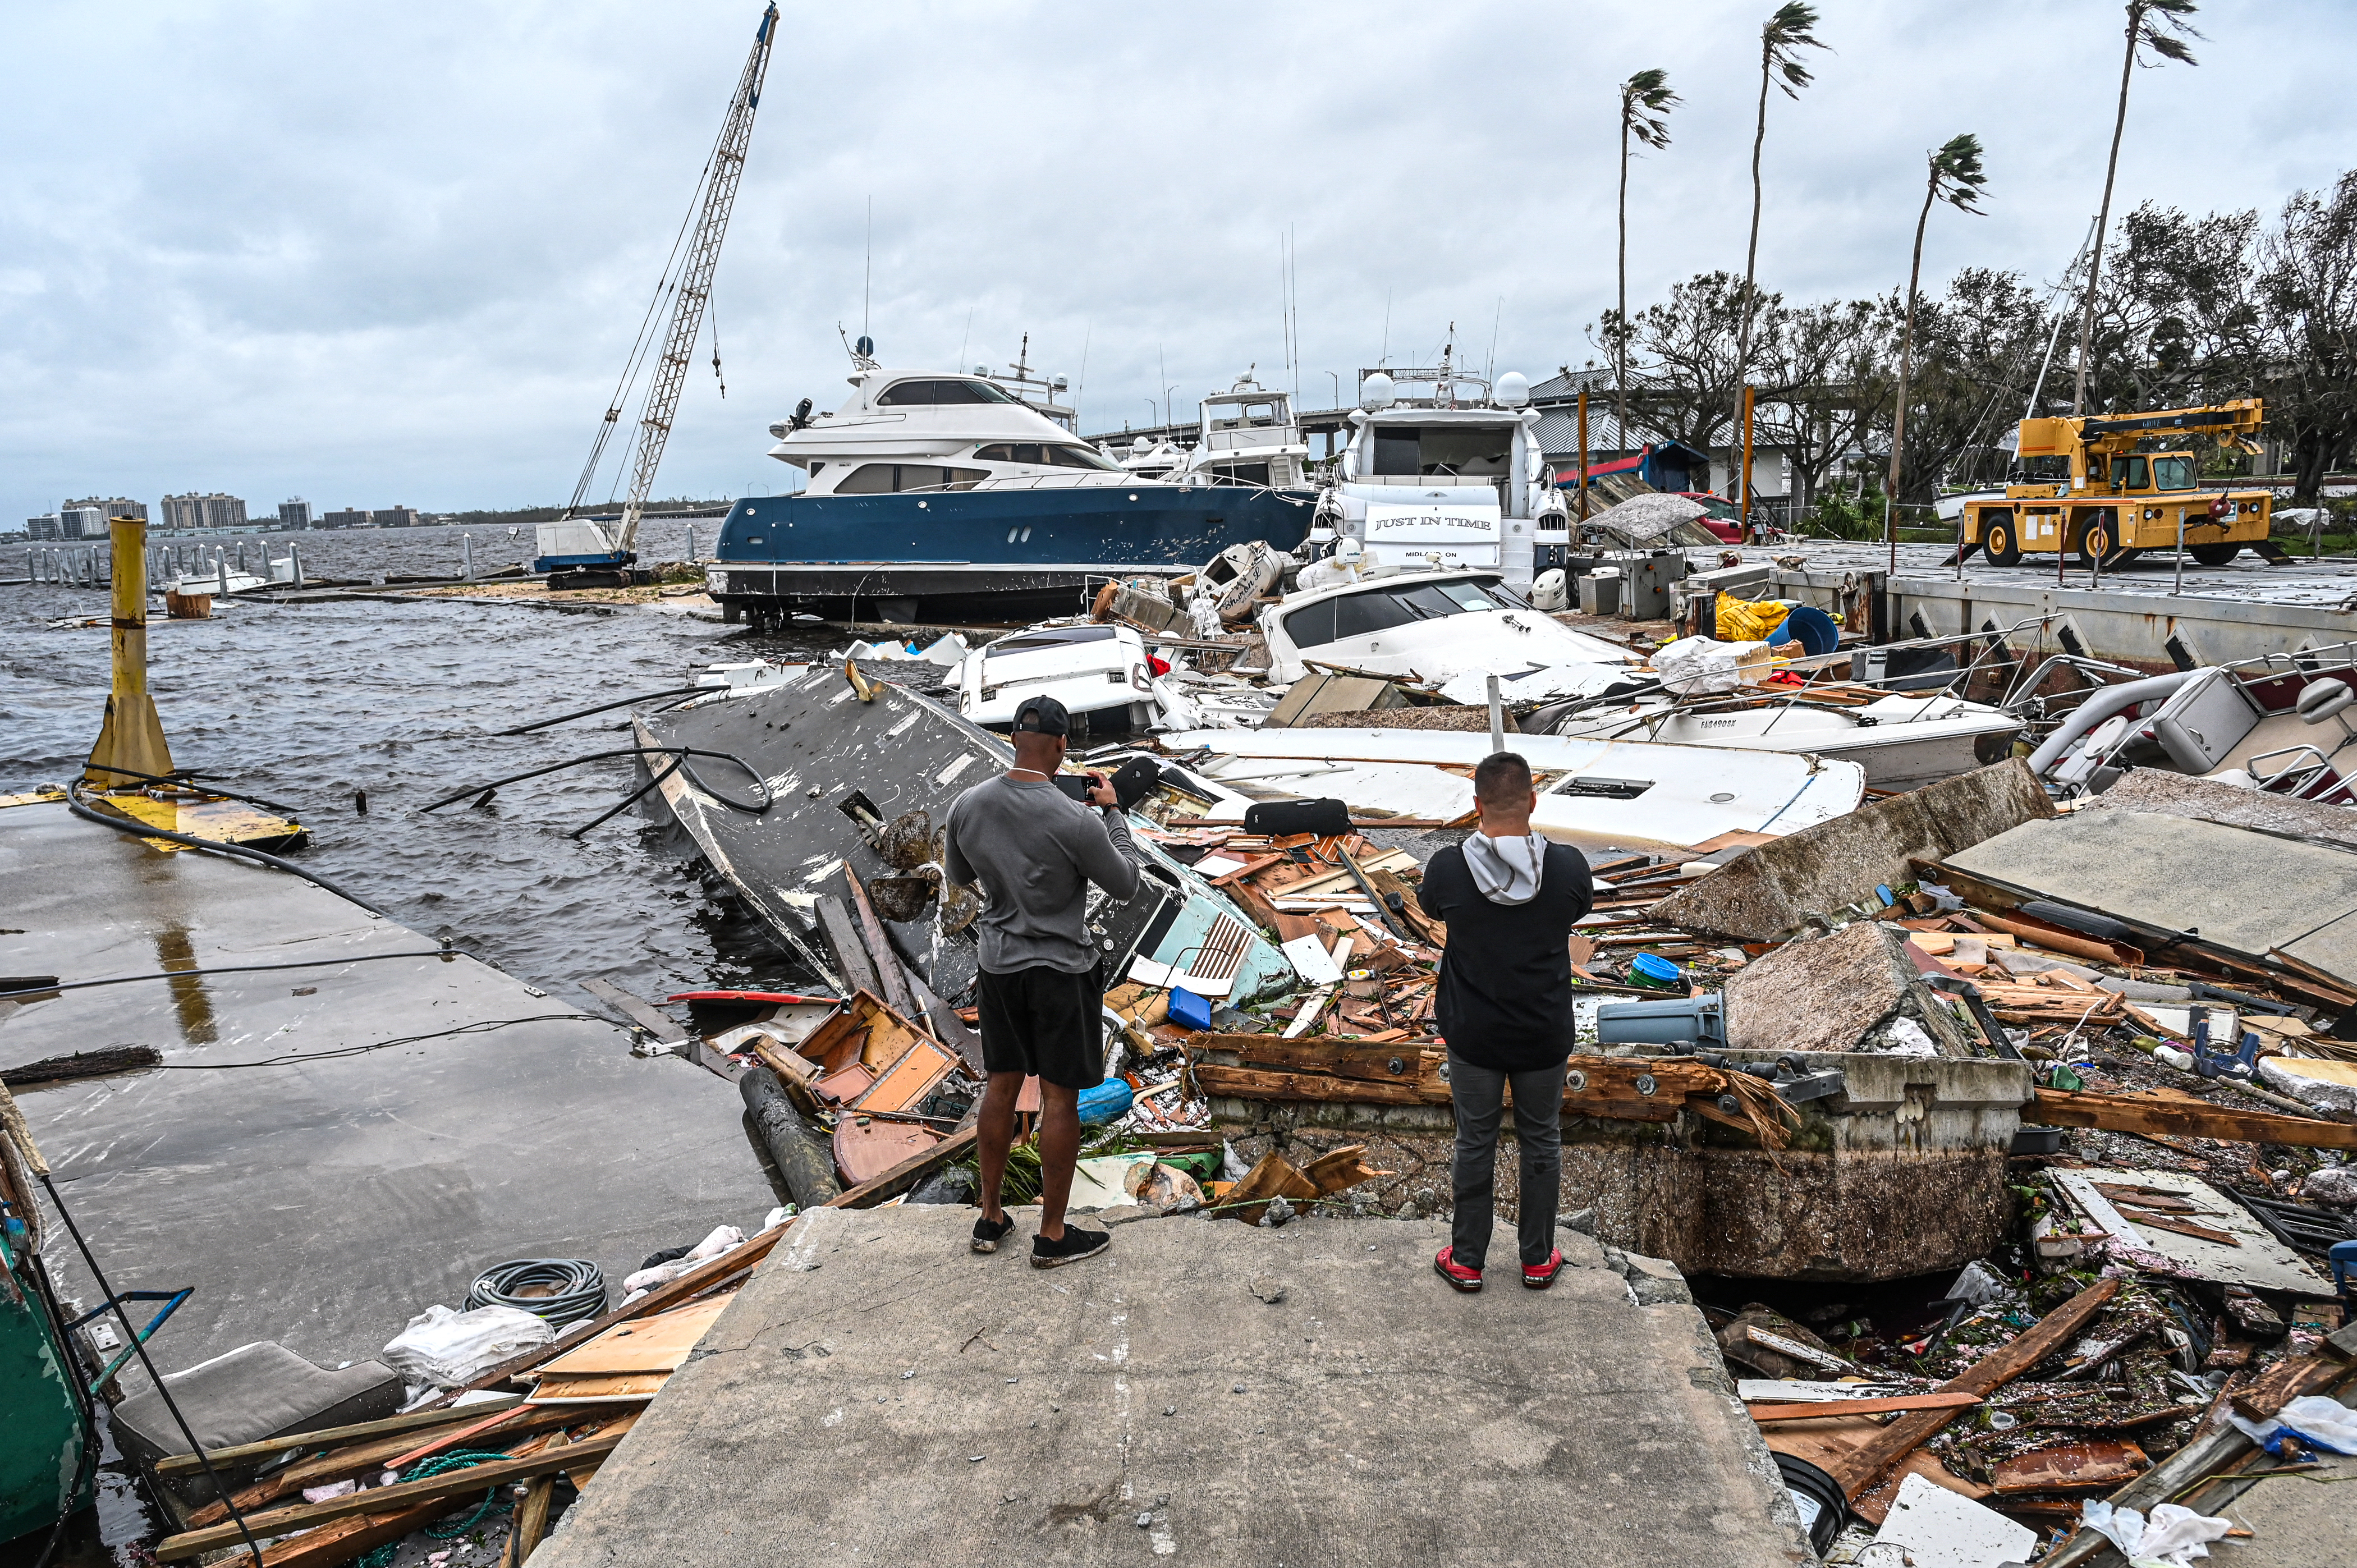 Los barcos quedan varados en la costa después del huracán Ian en Fort Myers, Florida, el 29 de septiembre de 2022. (Giorgio VIERA / AFP)